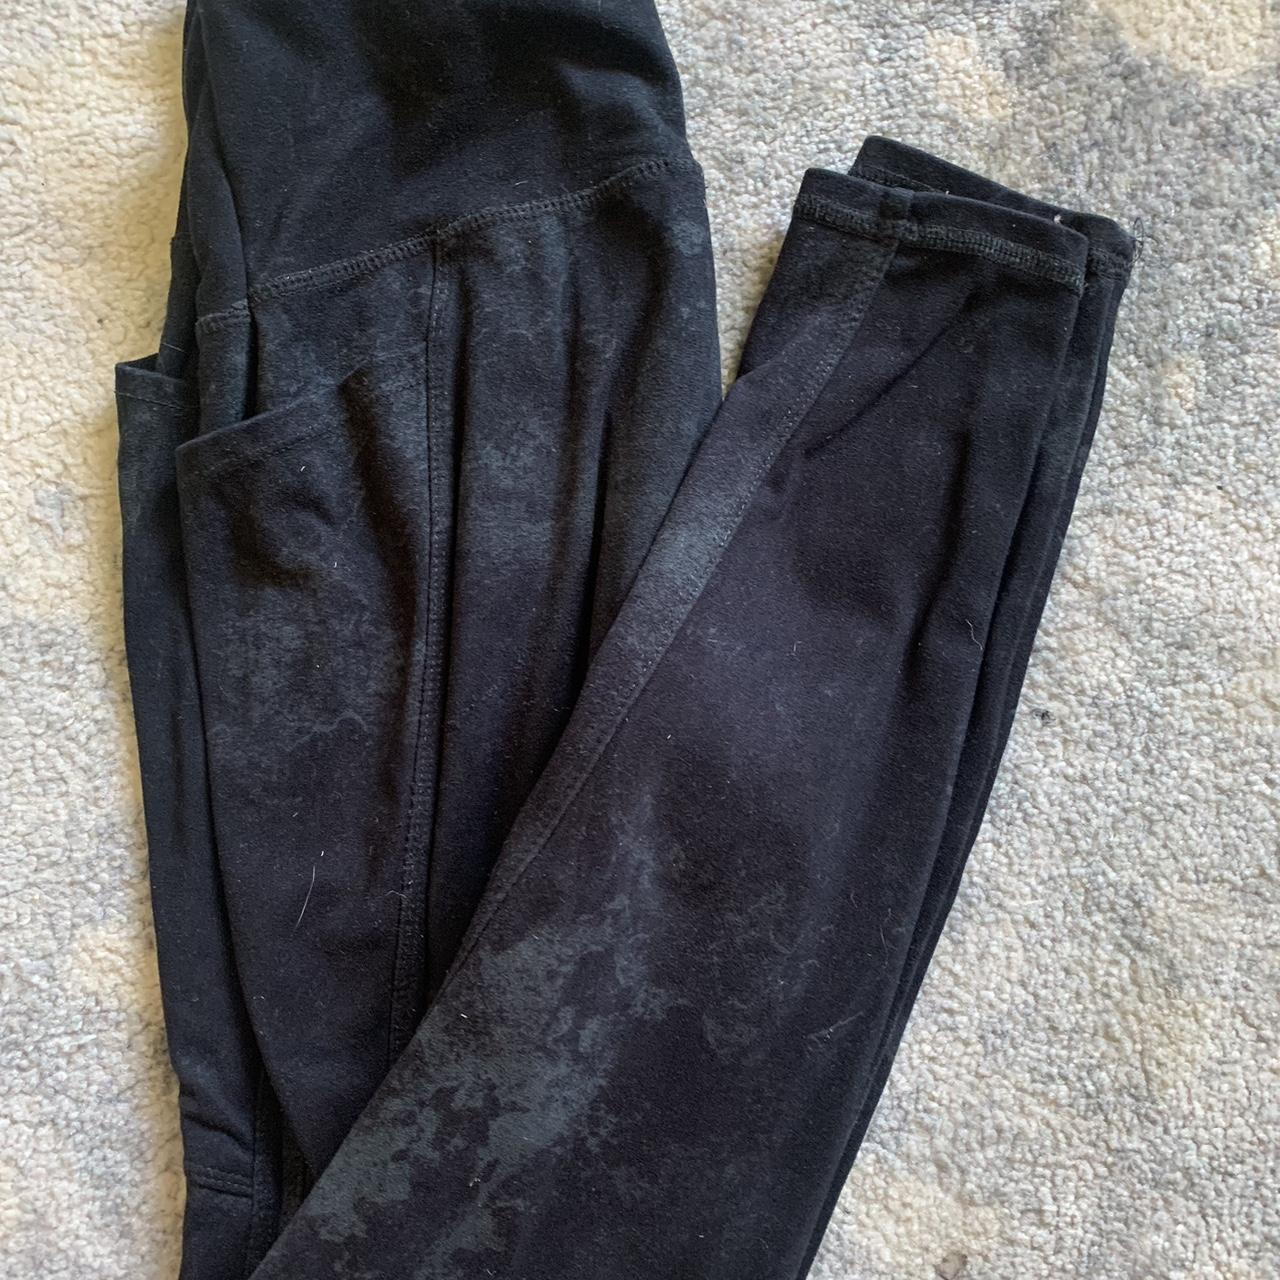 teal/black danskin leggings worn a few times. i will - Depop